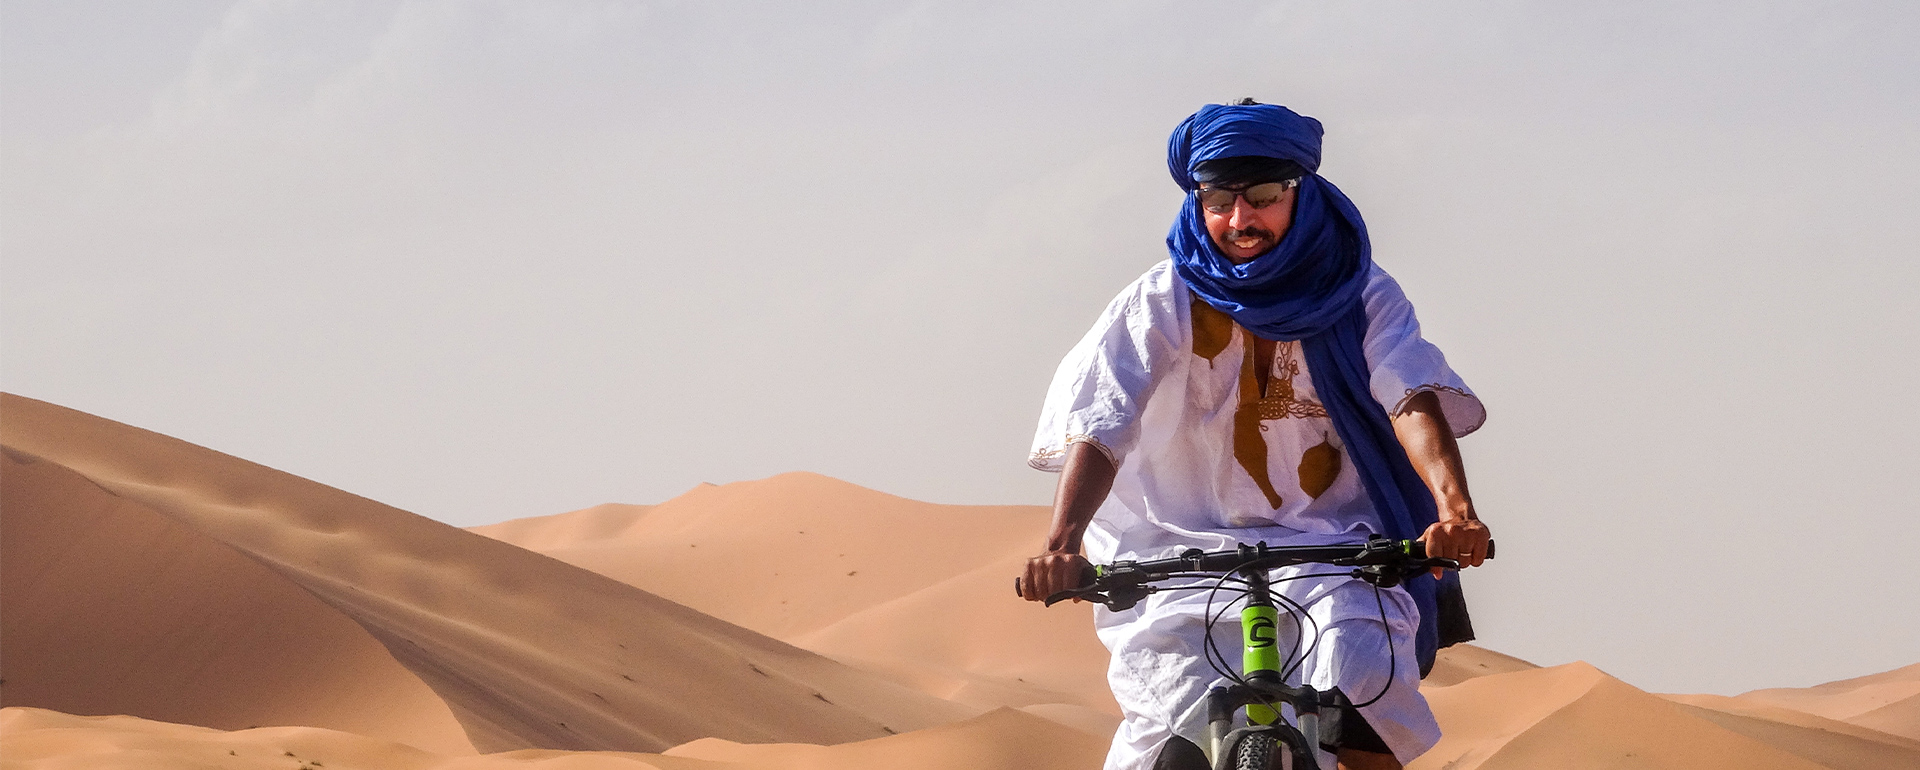 Bikereise in Marokko - Biken in der Wüste